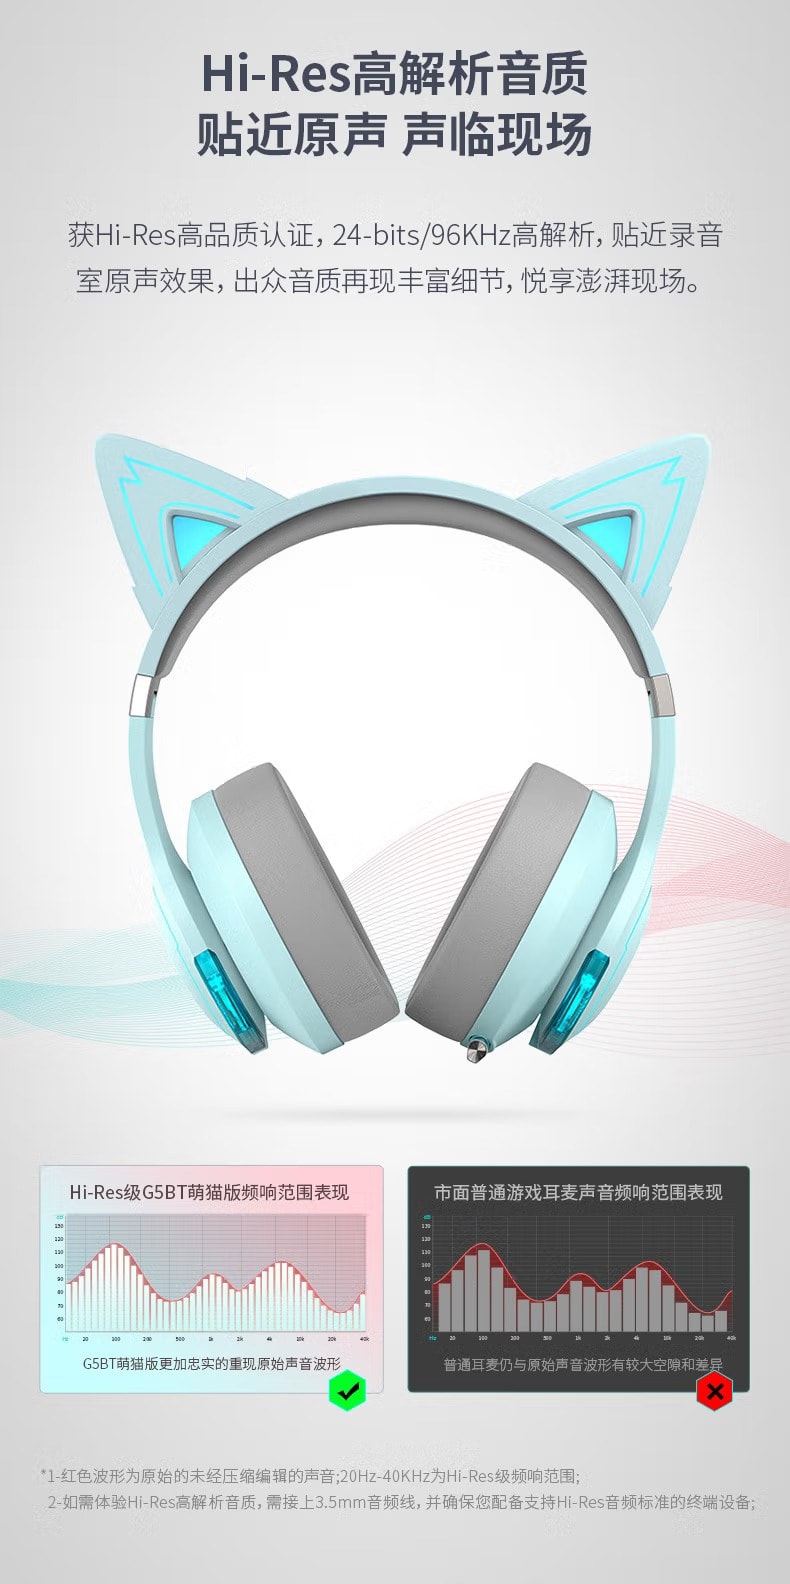 【流浪地球2】Edifier 漫步者 貓耳藍牙無線電競耳機頭戴式 G5BT 知更藍